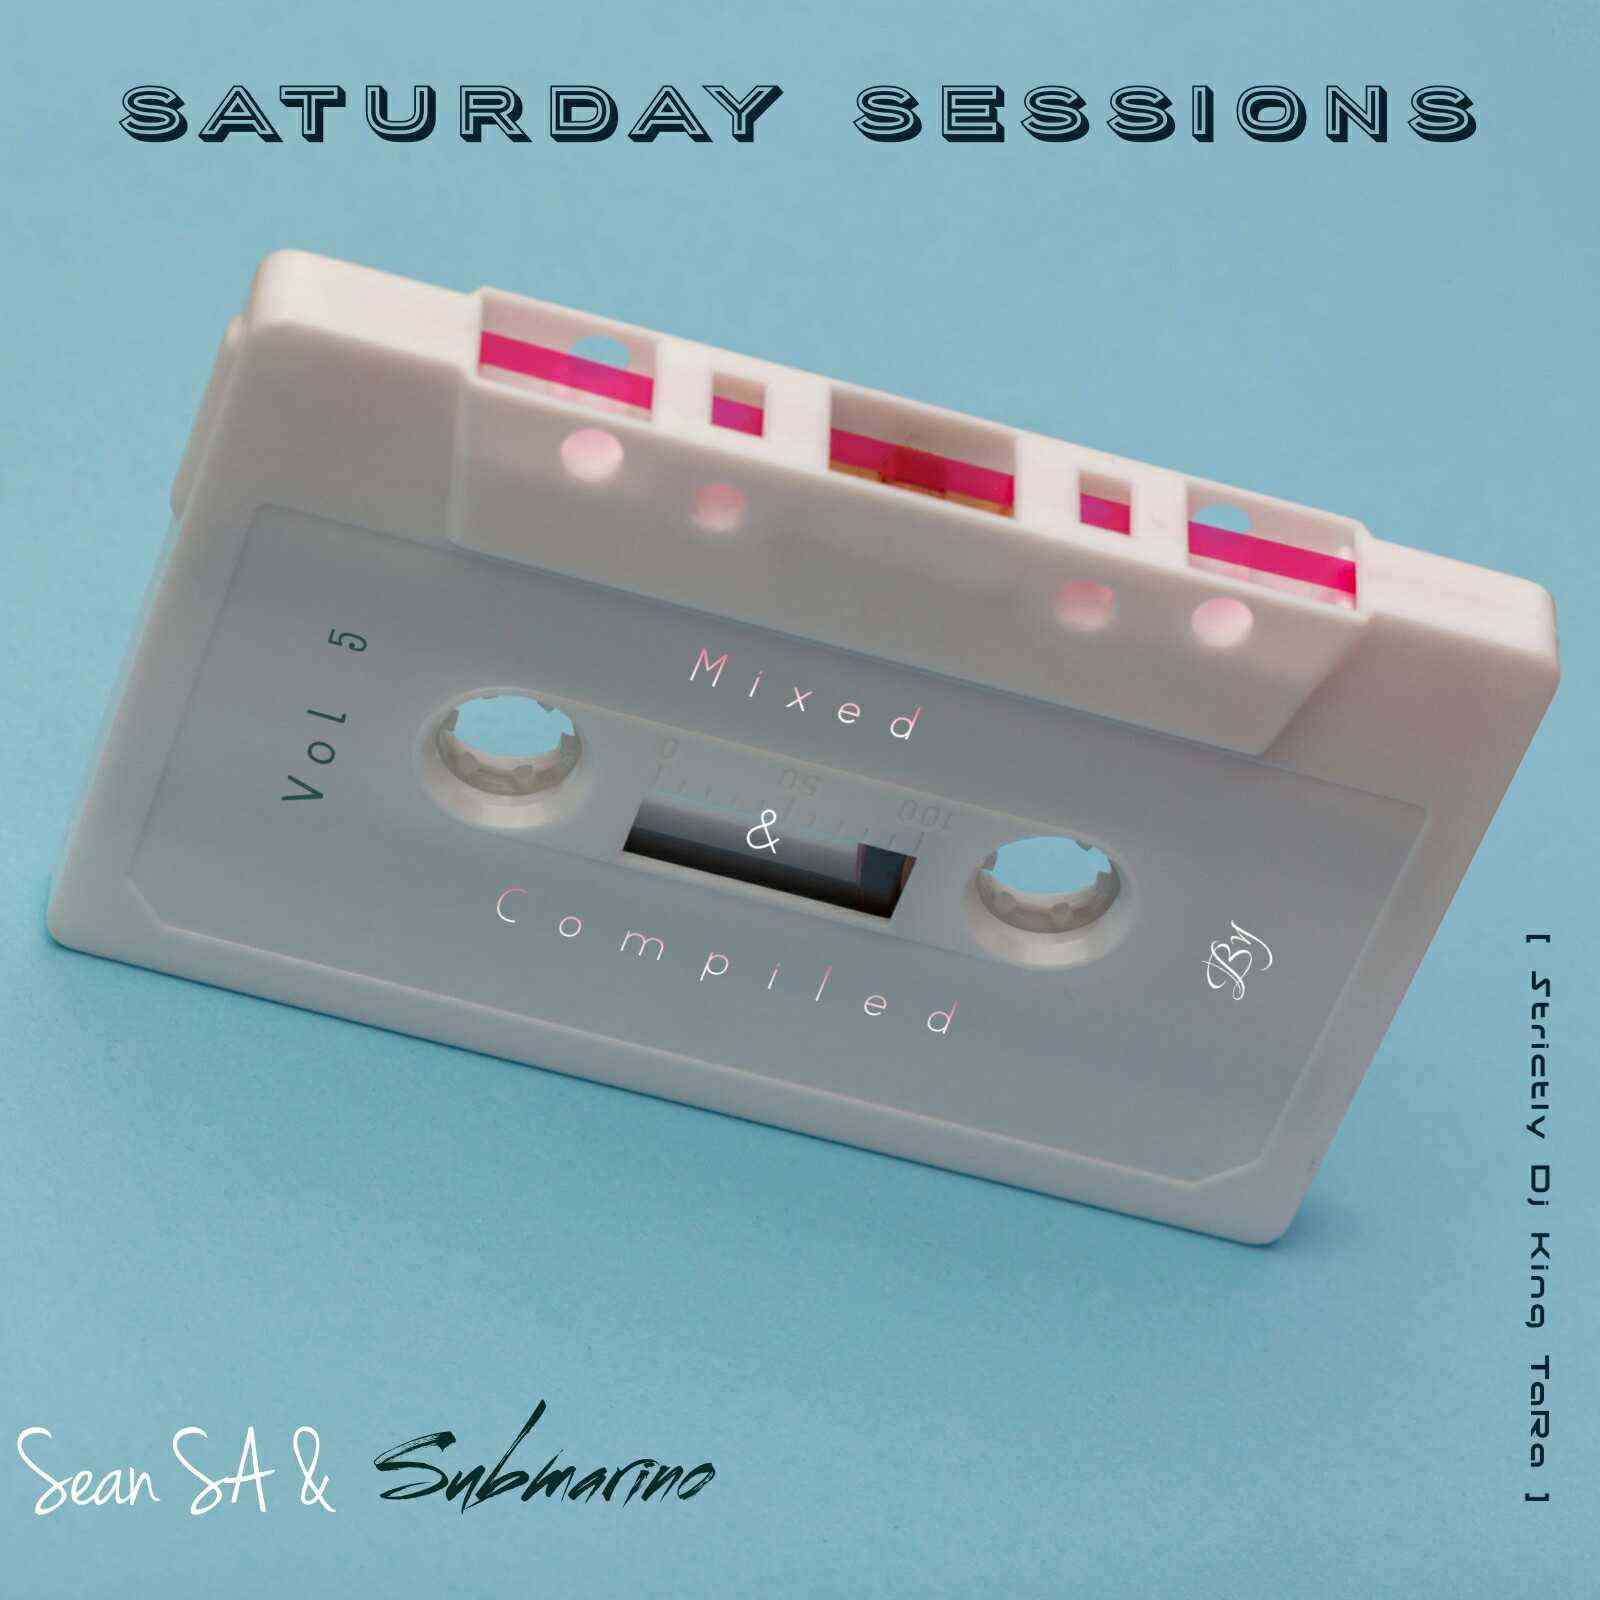 Sean SA & Submarino Saturday Sessions Vol 5 Strictly Dj King TaRa